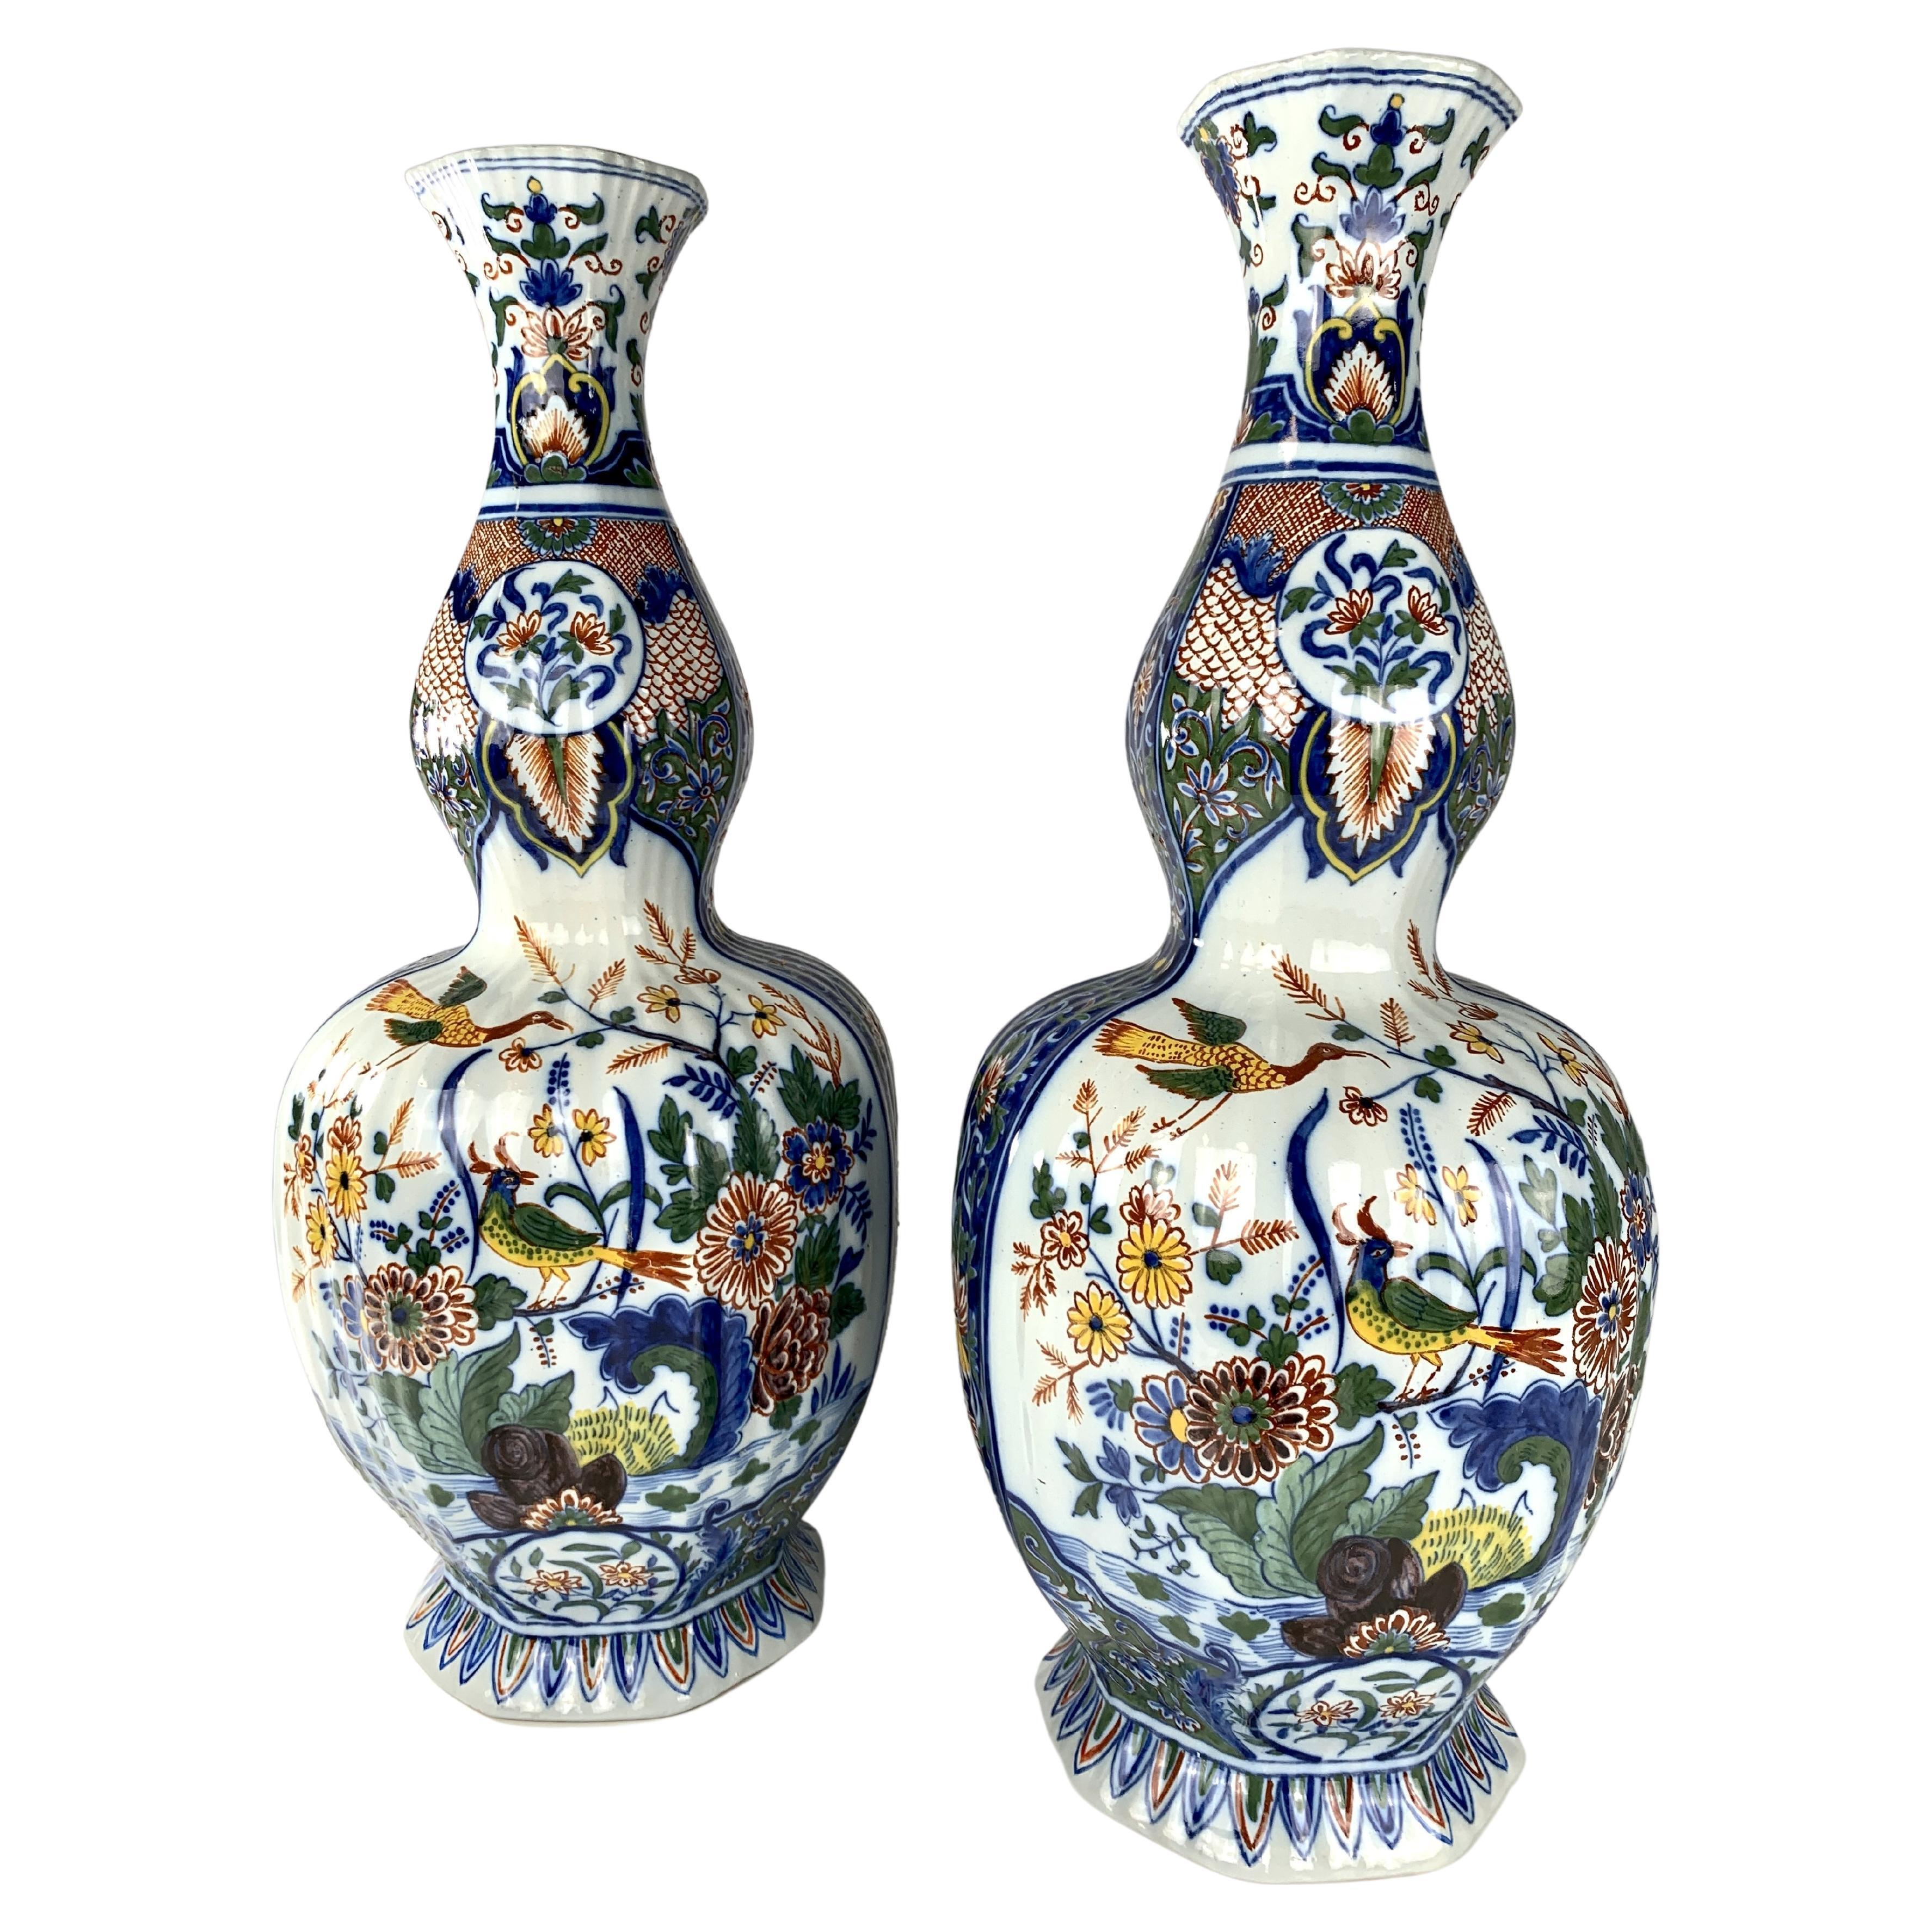 Dieses hübsche Paar niederländischer Delft-Mantelvasen wurde um 1880 in den Niederlanden hergestellt und hat die traditionelle Form eines Doppelkürbisses.  
Die Vasen wurden in traditionellen polychromen Farben bemalt und zeigen eine Szene am Wasser